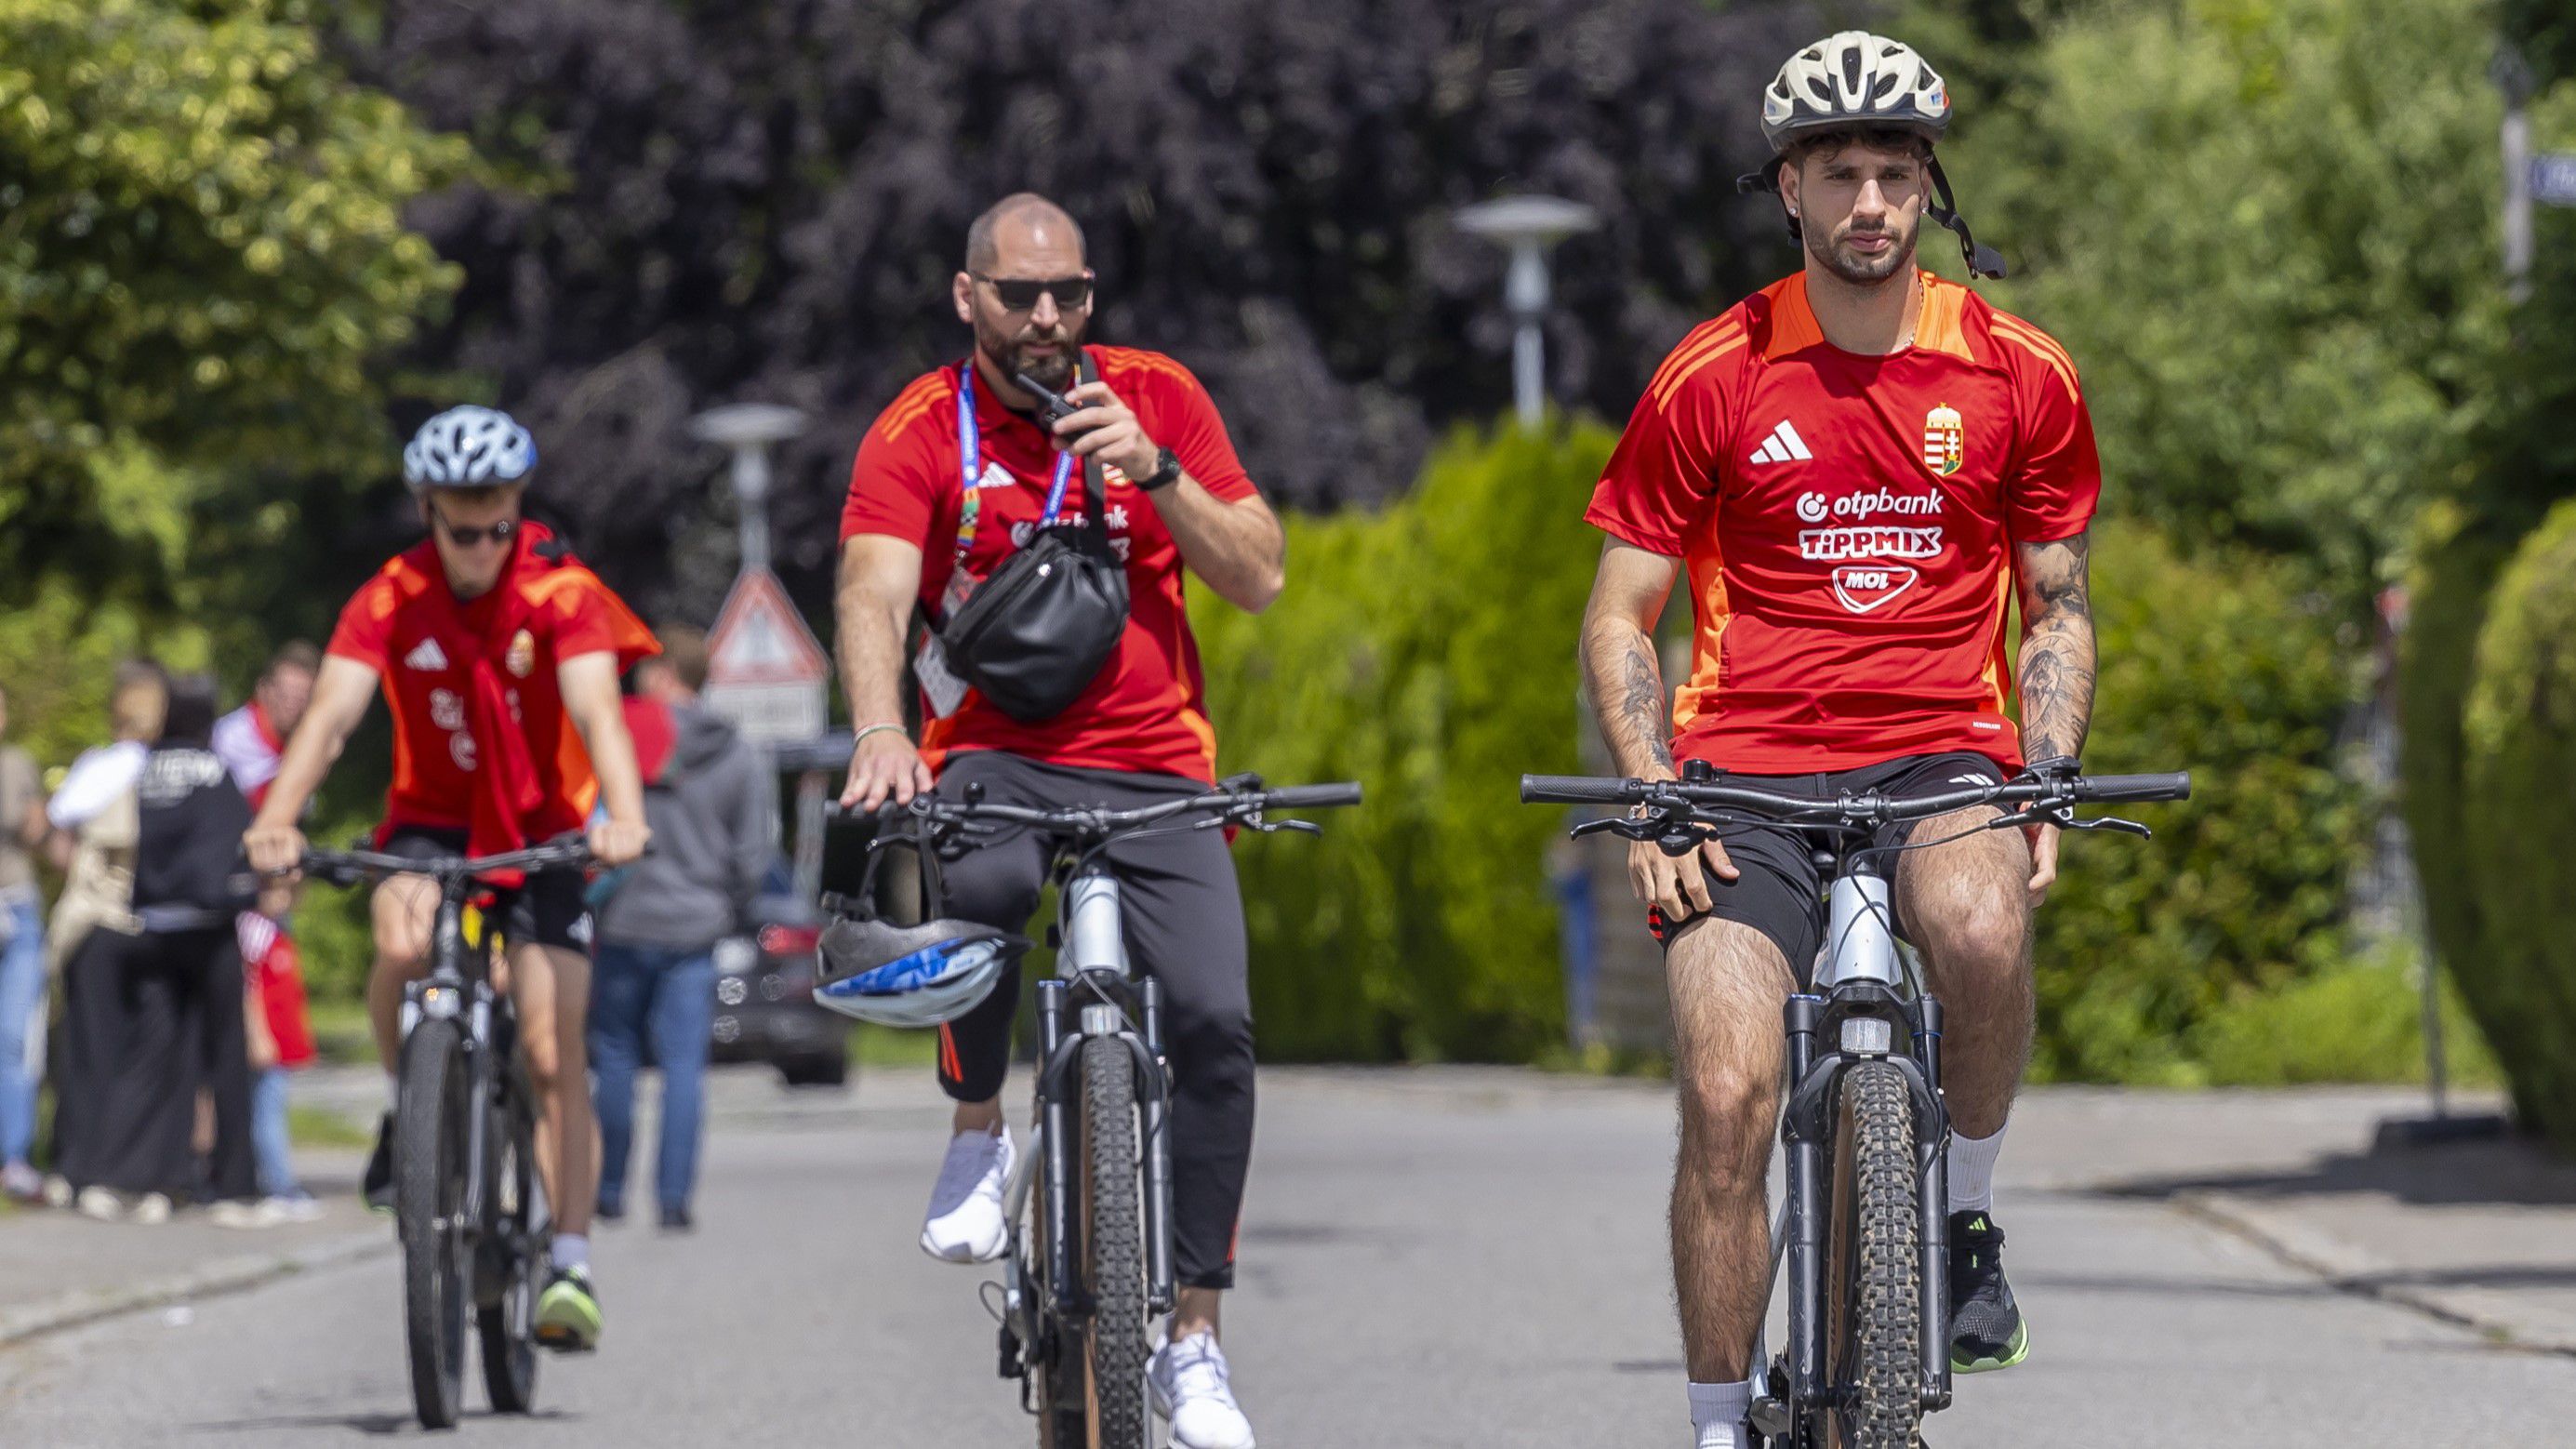 Szoboszlait biciklizés közben sem hagyta magára a testőr /Fotó: Czerkl Gábor